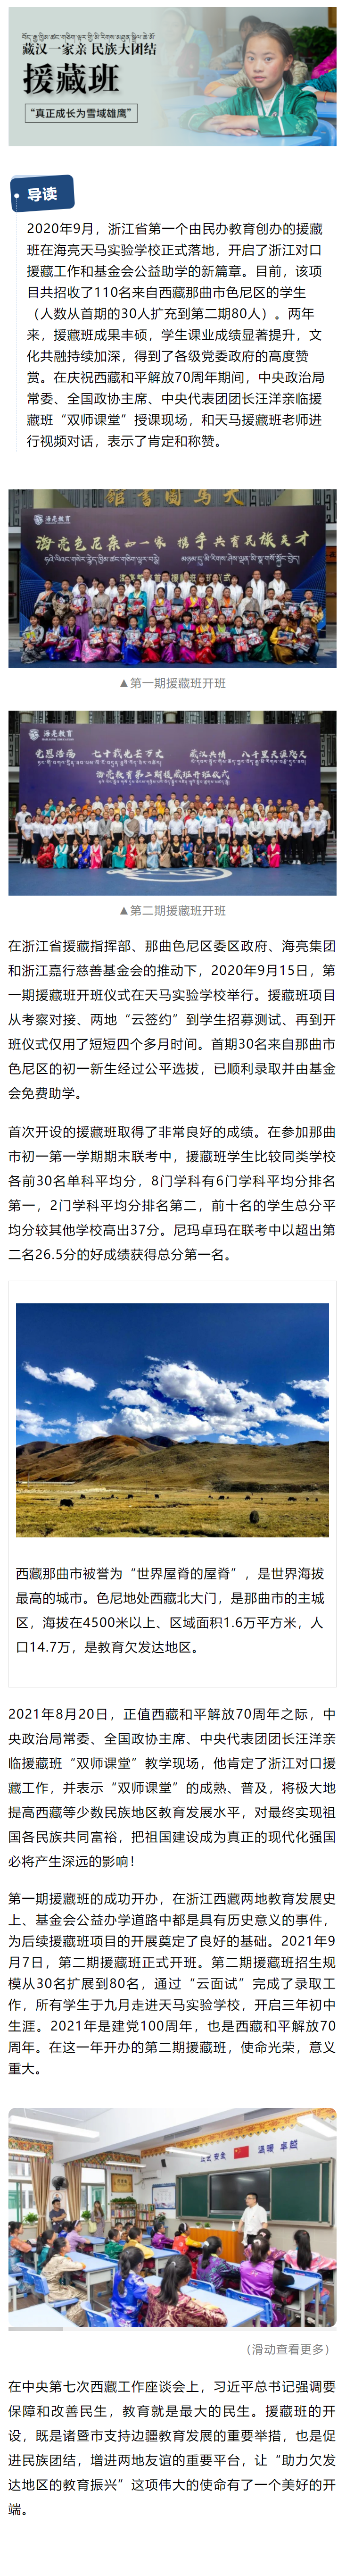 【5.31】藏汉一家亲 民族大团结  援藏班抒写公益助学新篇.png